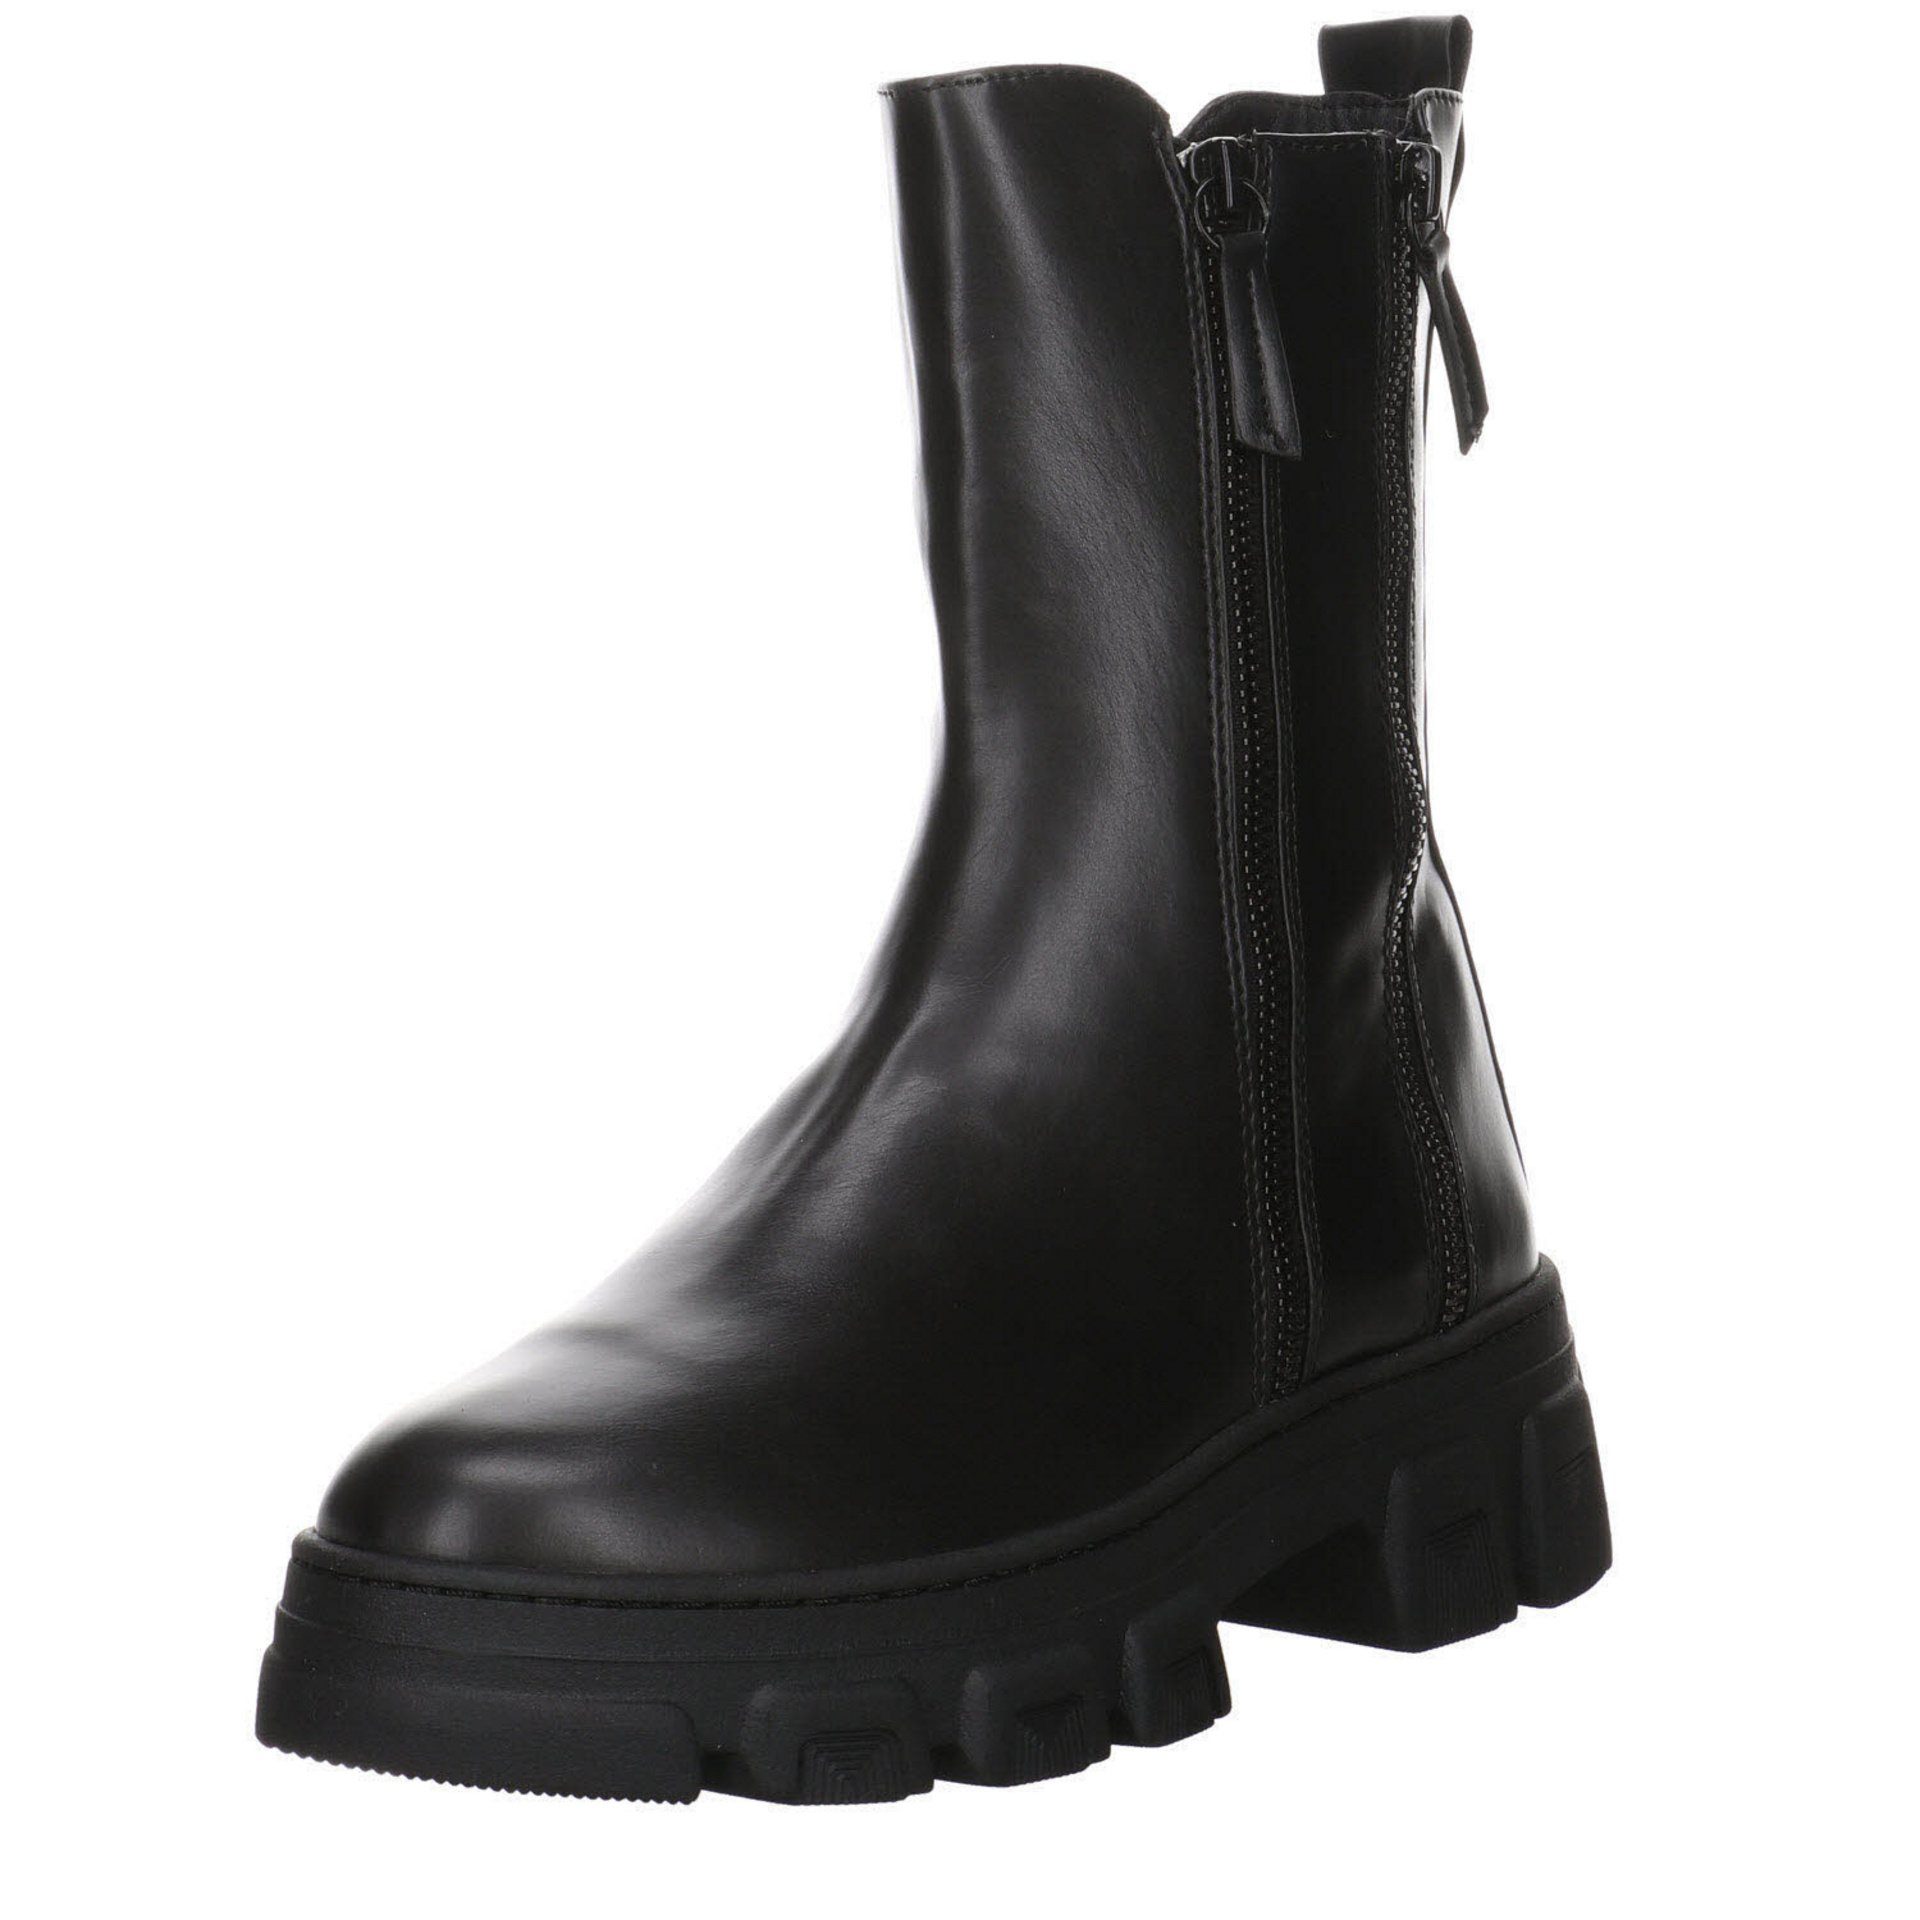 Tamaris Damen Stiefeletten Schuhe Boots Elegant Freizeit Stiefel Glattleder BLACK